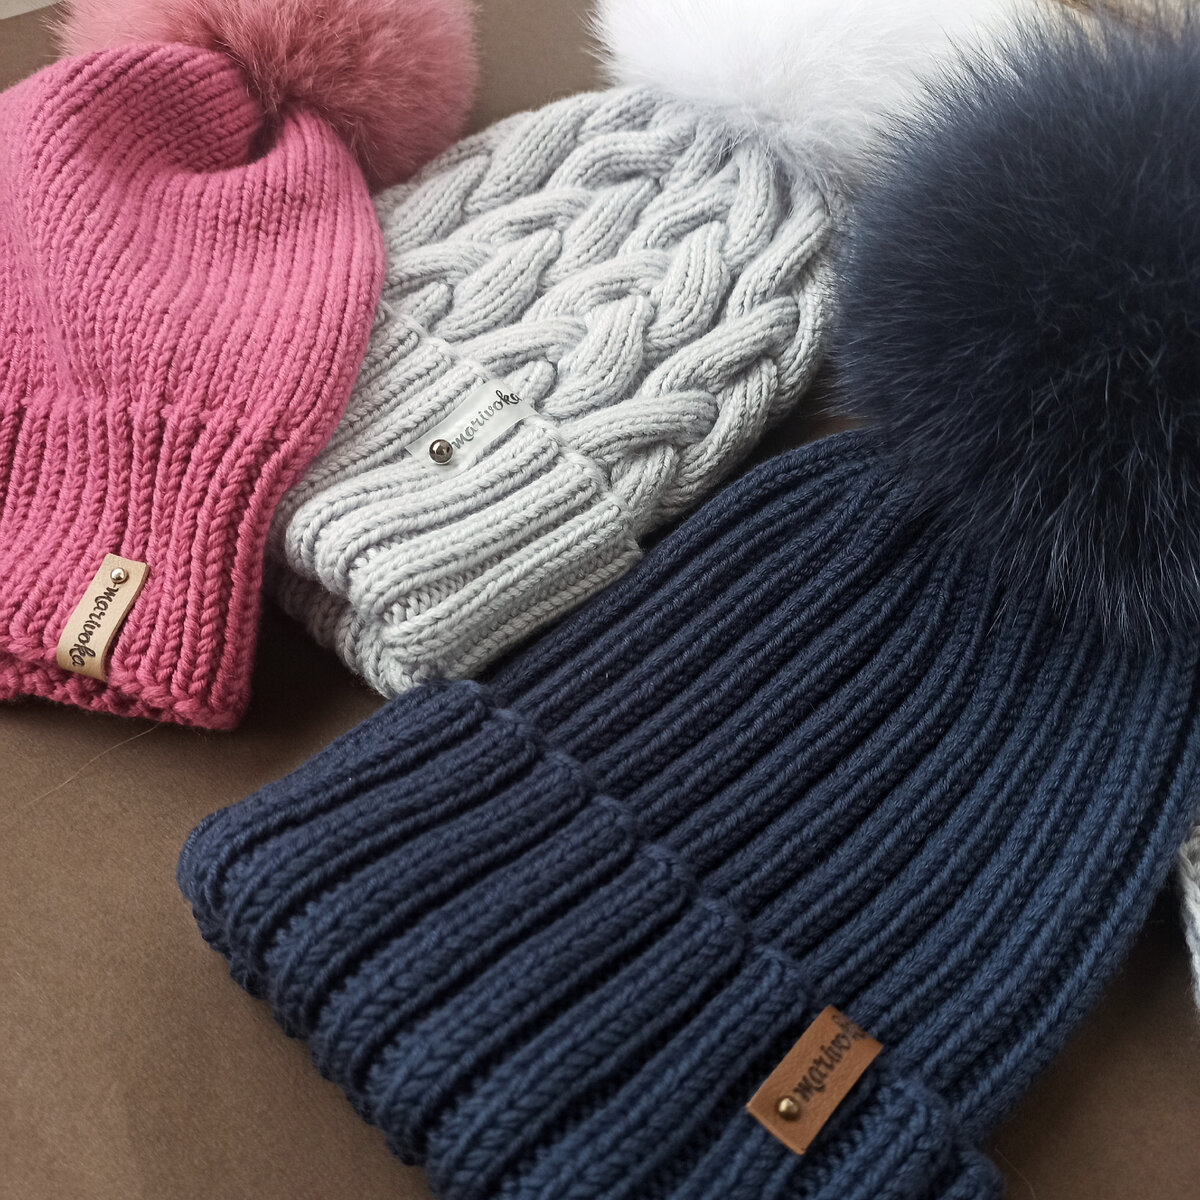 Лучшая пряжа для вязания шапок. Как определить из какой пряжи на какой сезон вязать?